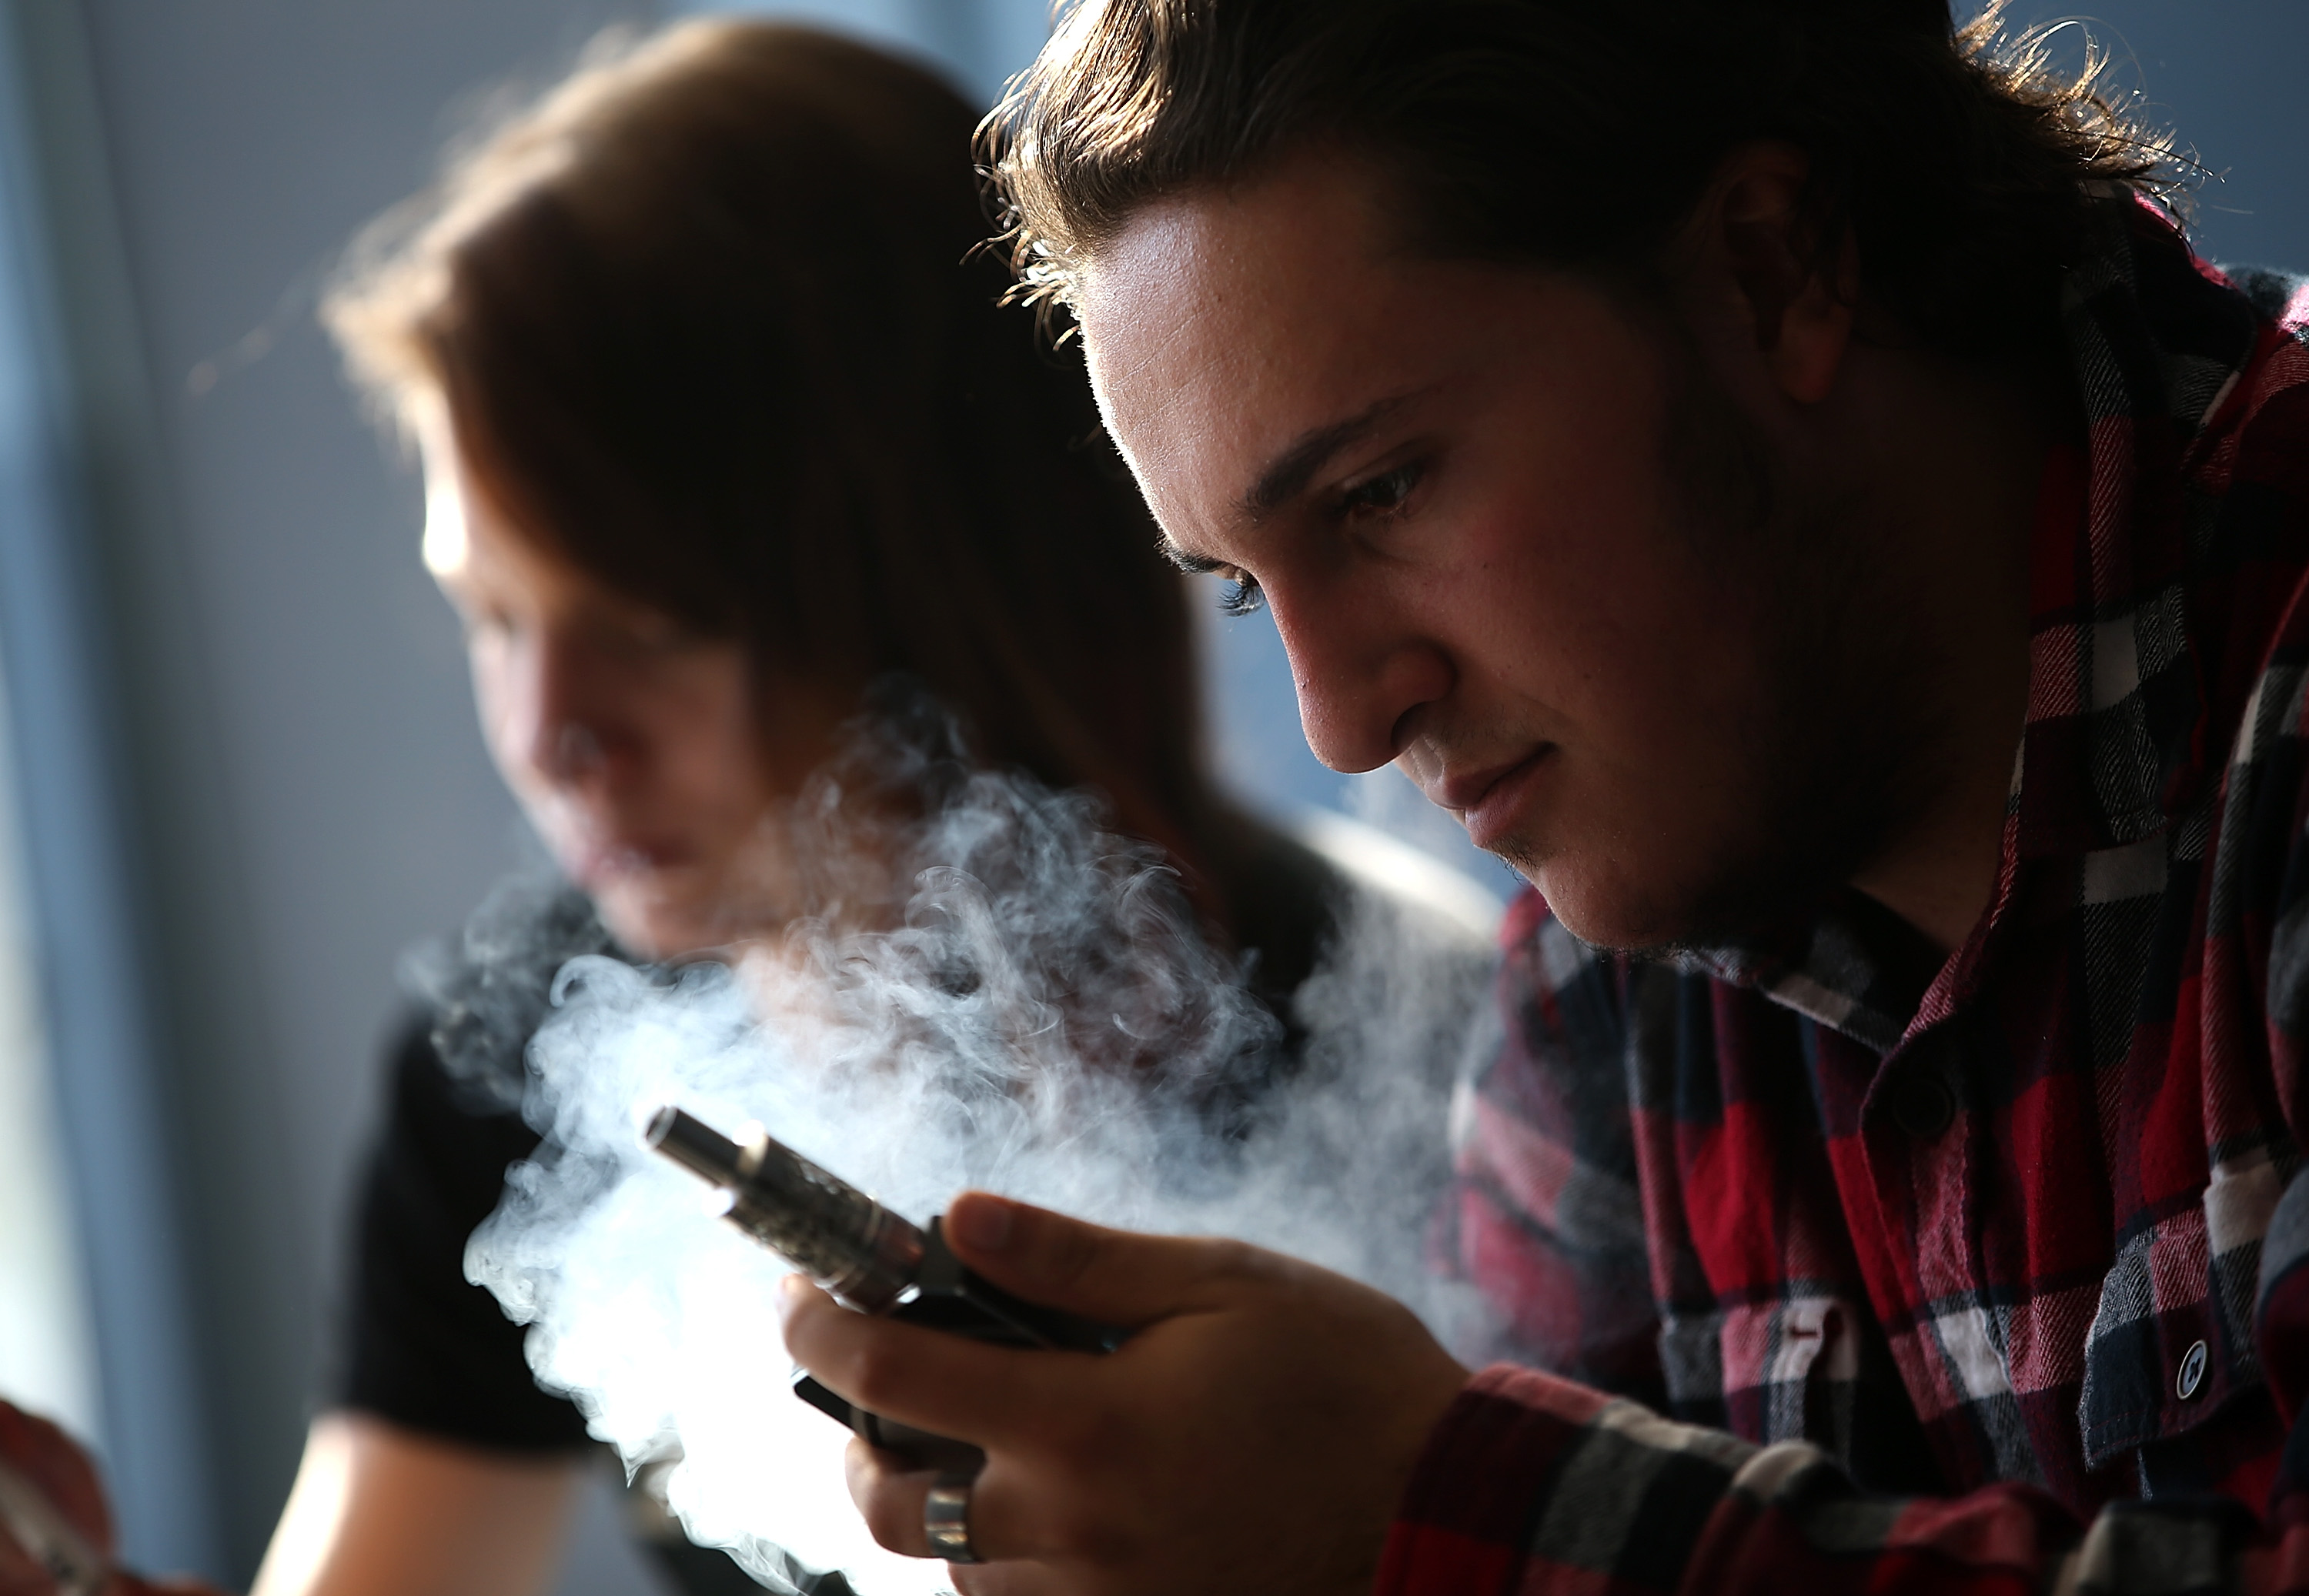 FDA aromalı e-sigaraları yasakladı